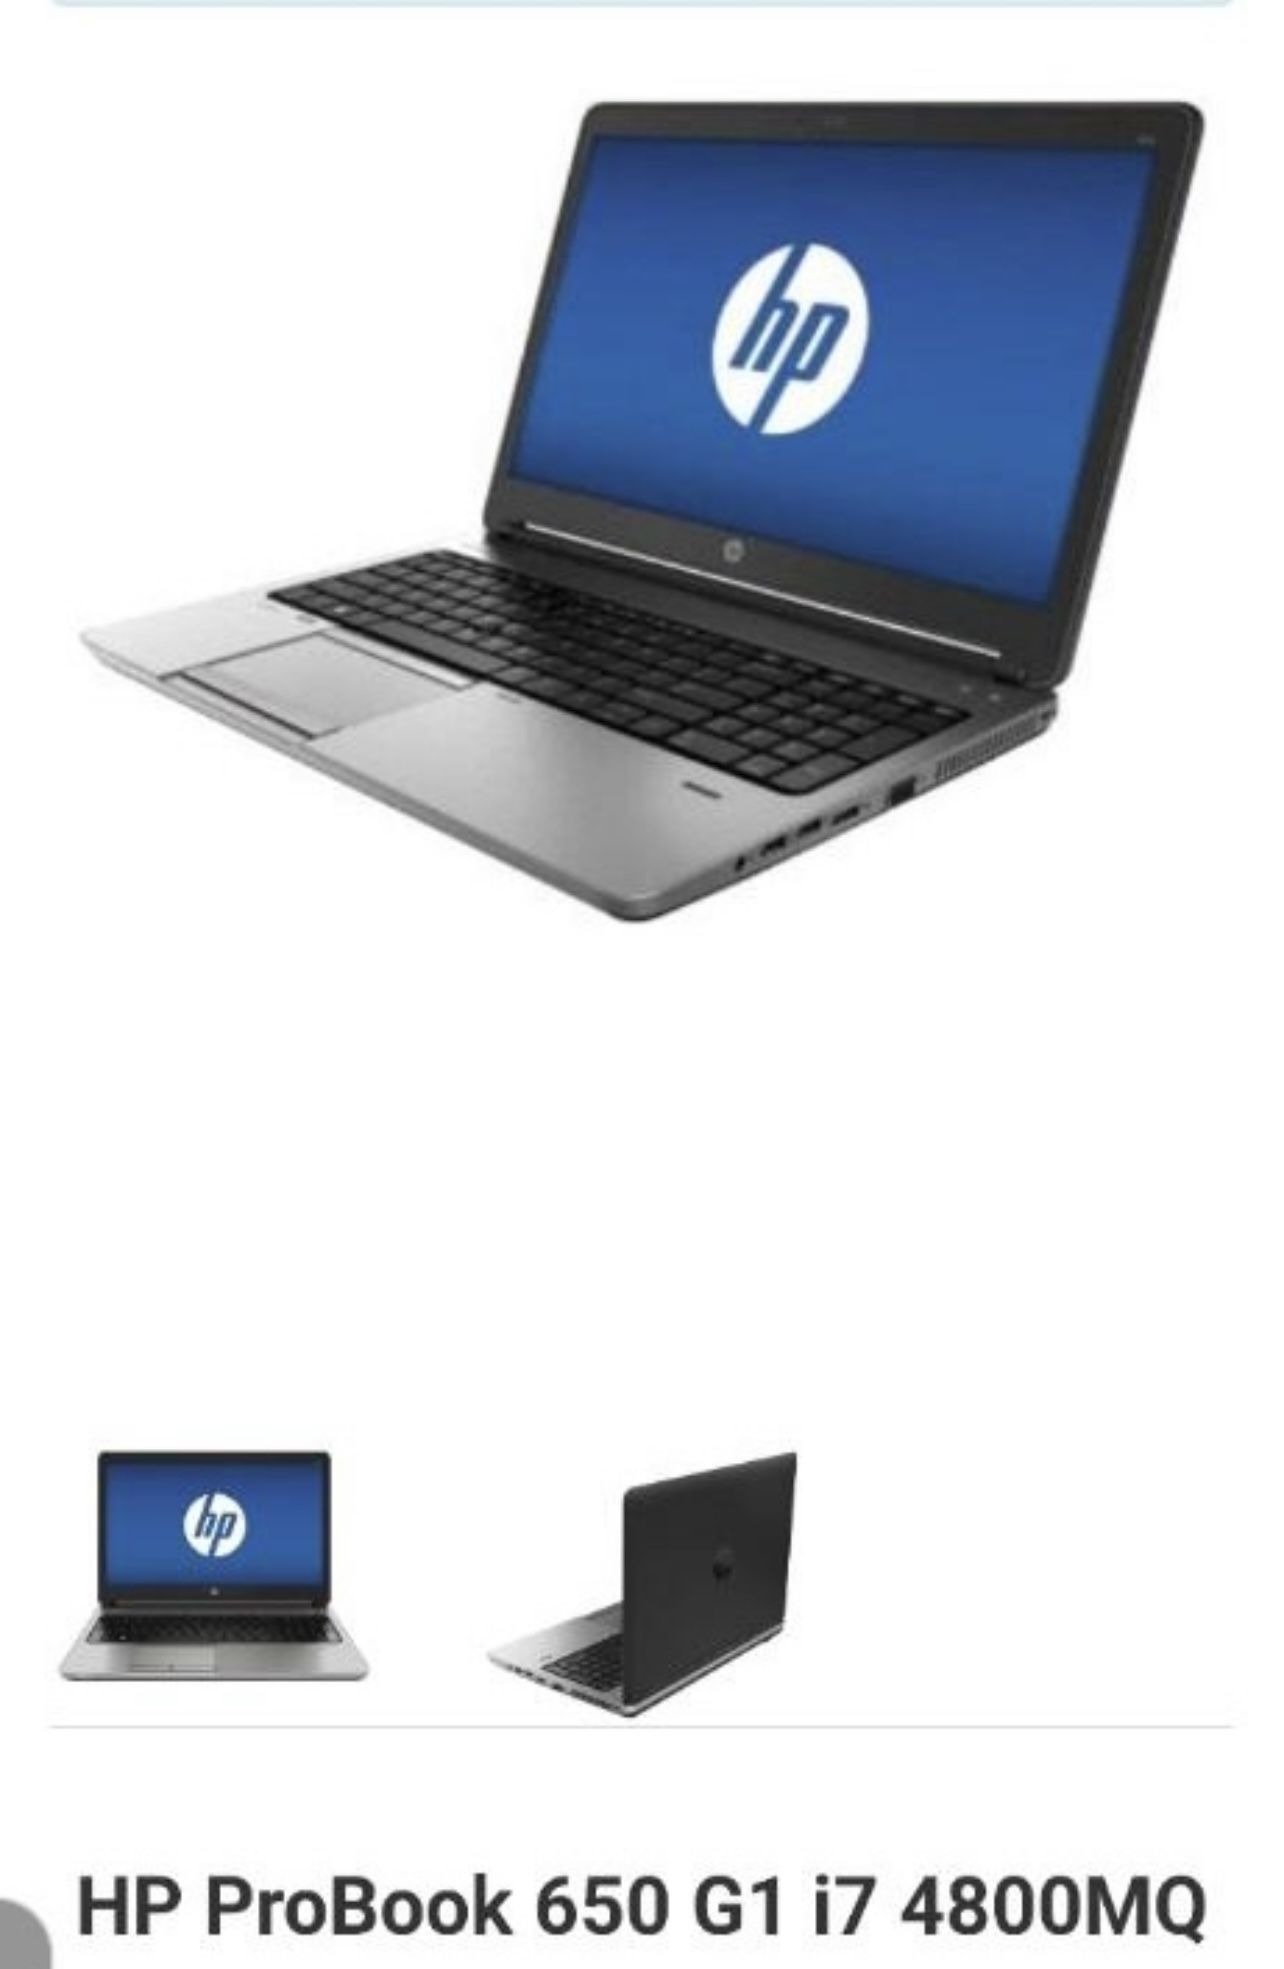 HP ProBook 650 G1 I7 4800mq